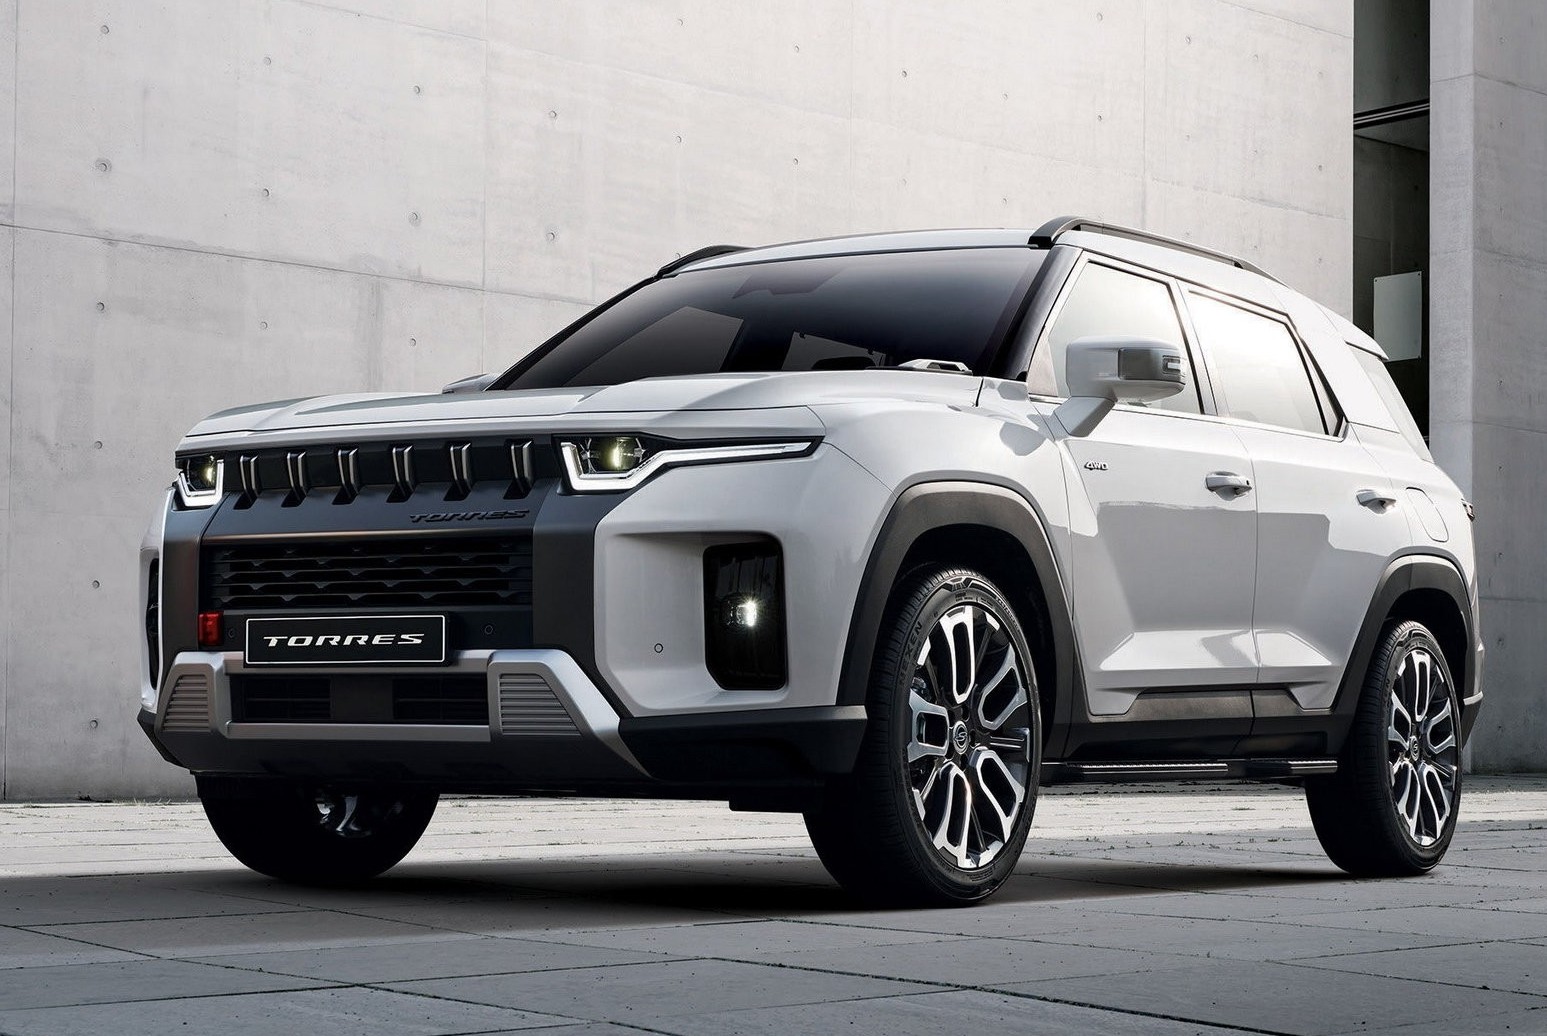 Teste e reviews do novo Ssangyong Torres 2023, crossover por apenas 21.000 euros inclui Range Rover e Jeep